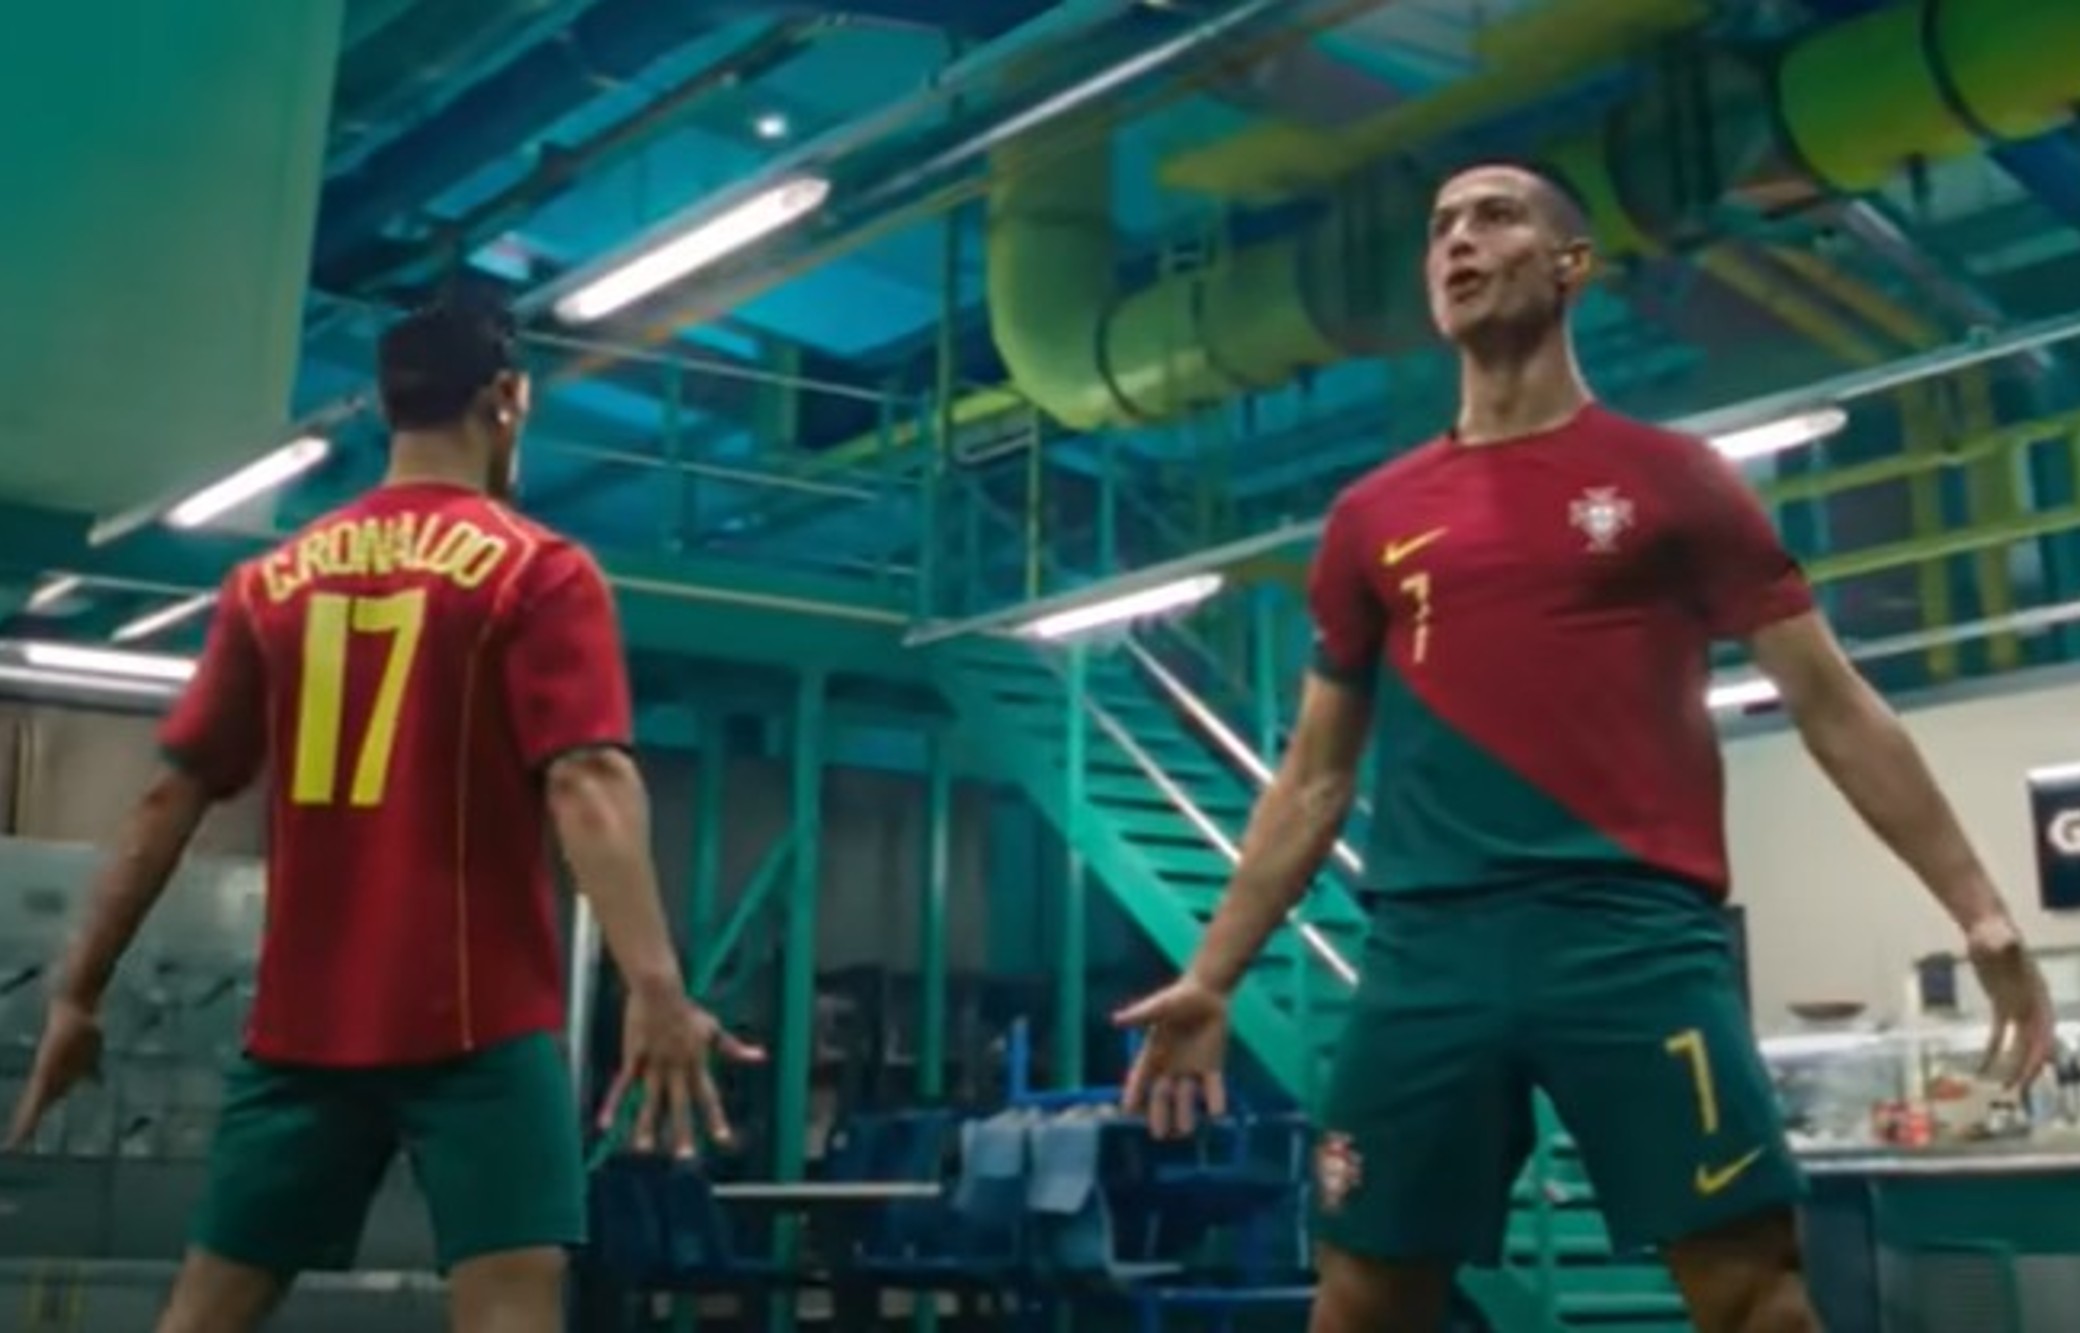 Excelente rodillo salvar Nike lanza comercial con multiverso de leyendas futboleras (Video) -  Emprendedor